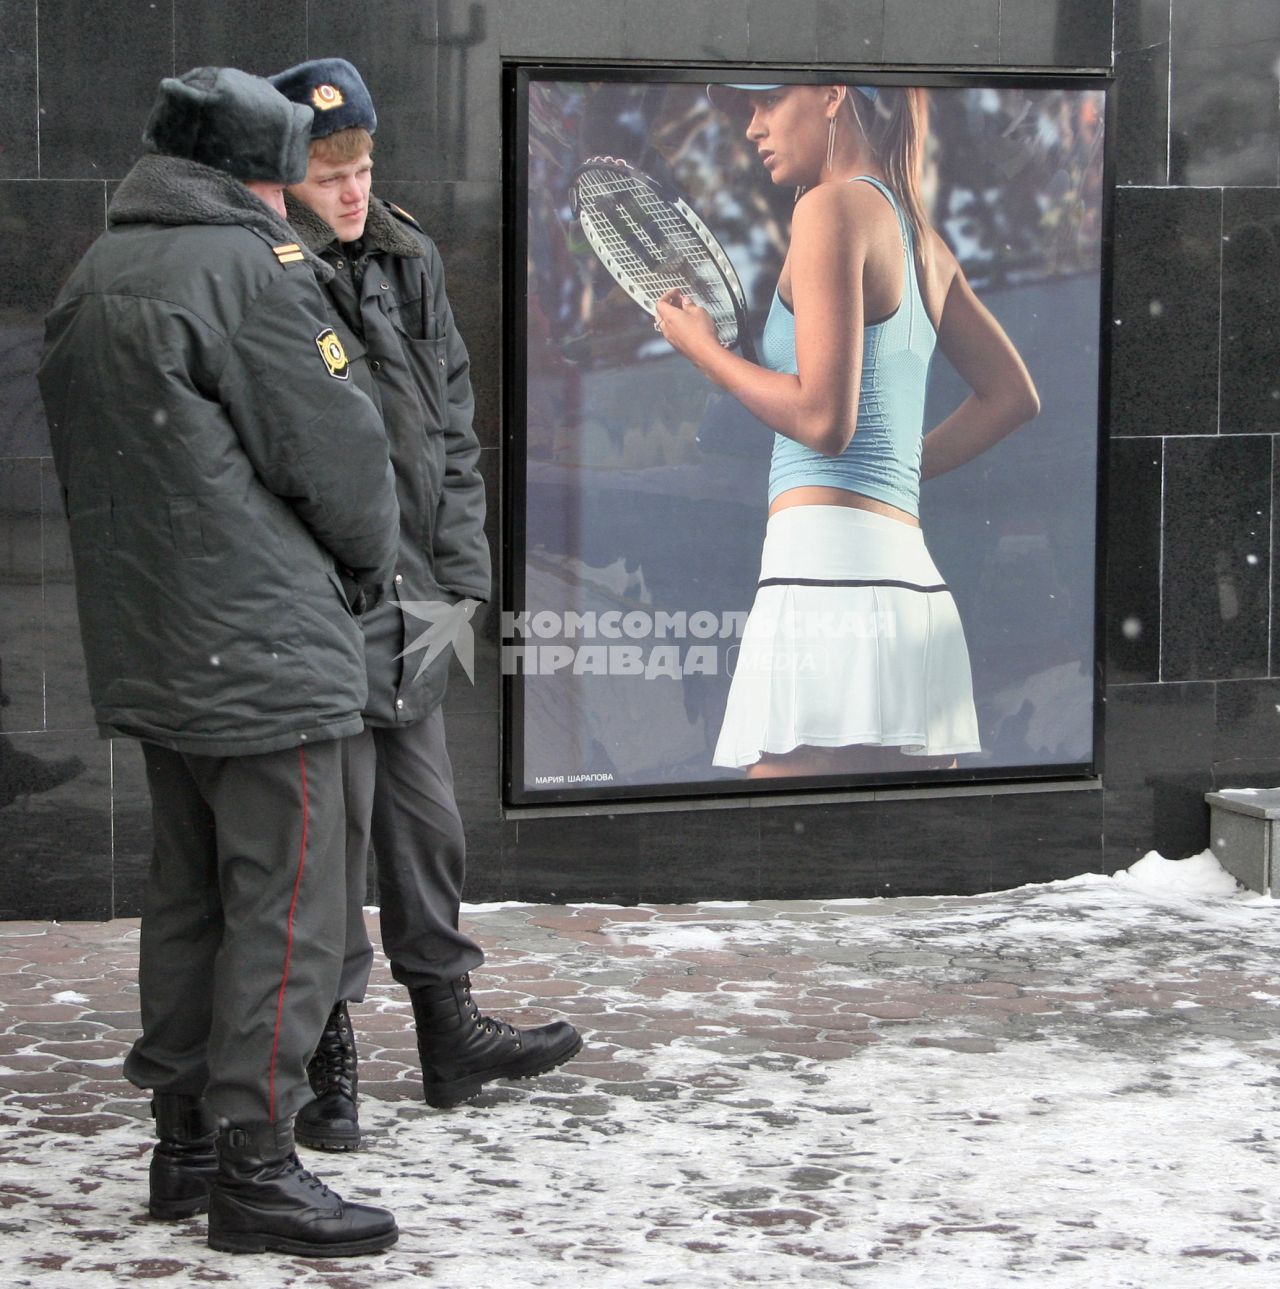 Полицейские зимой жмутся от холода рядом с рекламным щитом на котором изображена теннисистка Мария Шарапова.